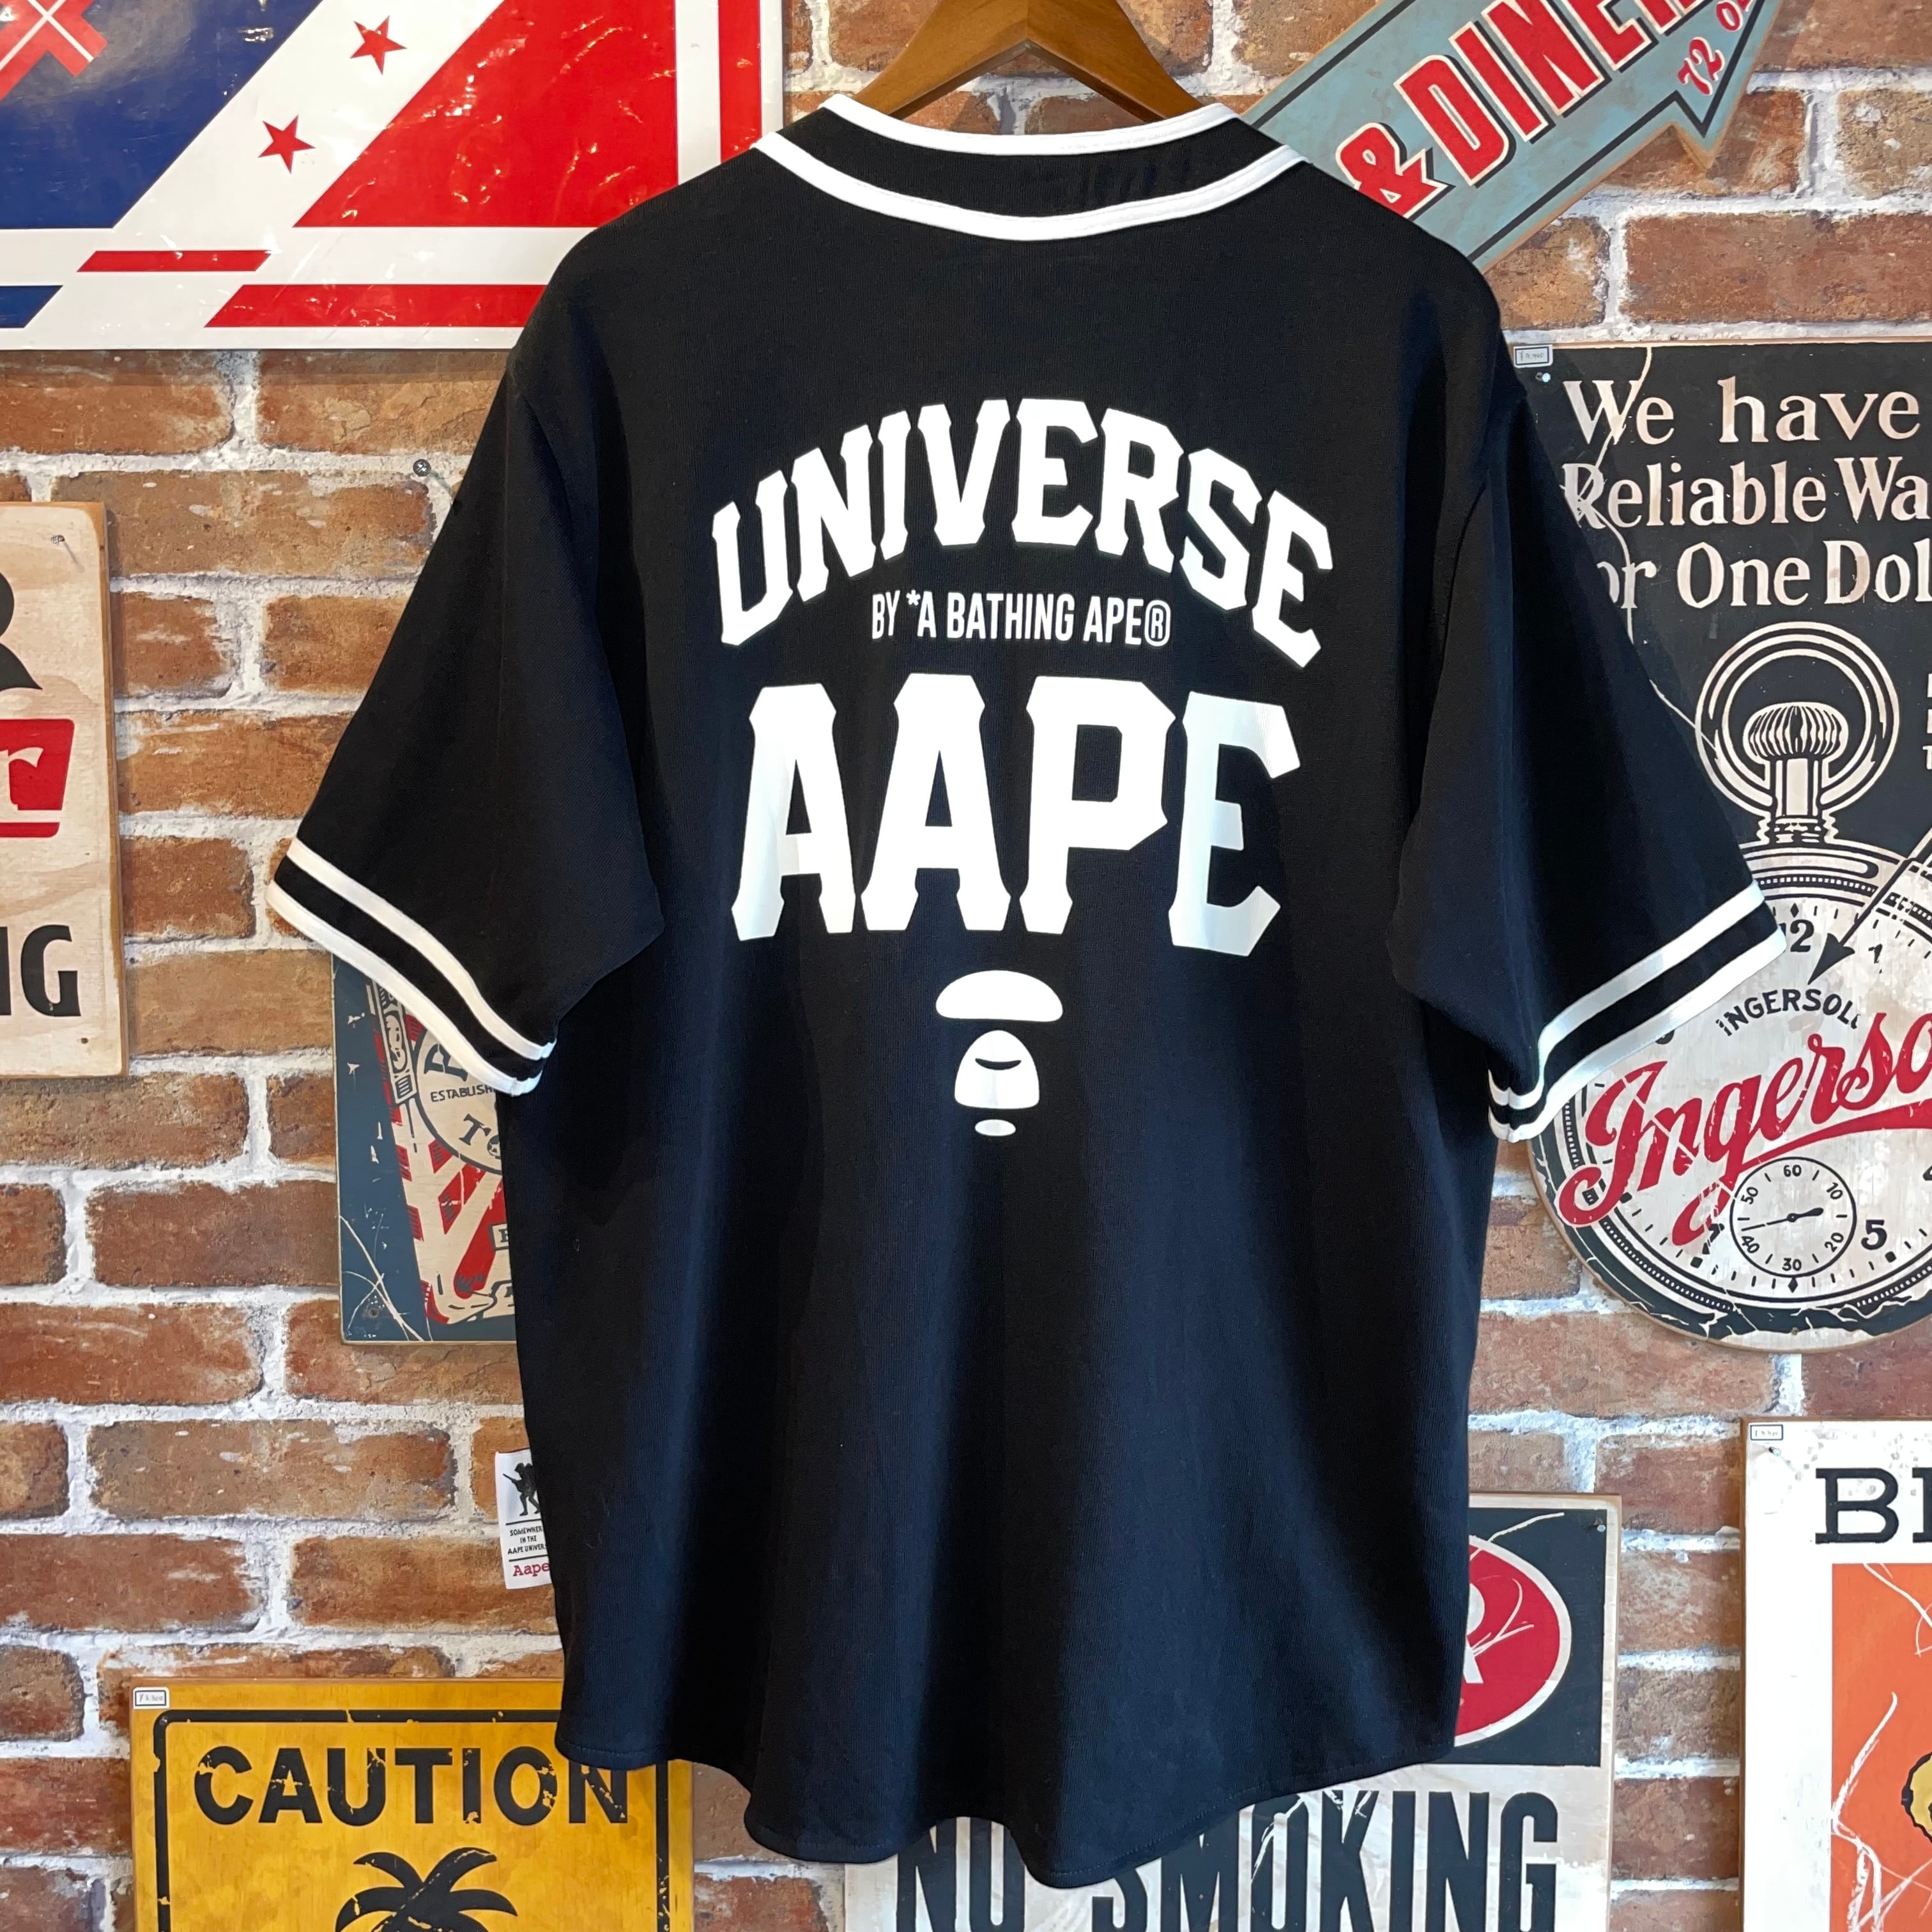 AAPE A BATHING APE BAPE ベースボールシャツ ロゴ ゲームシャツ